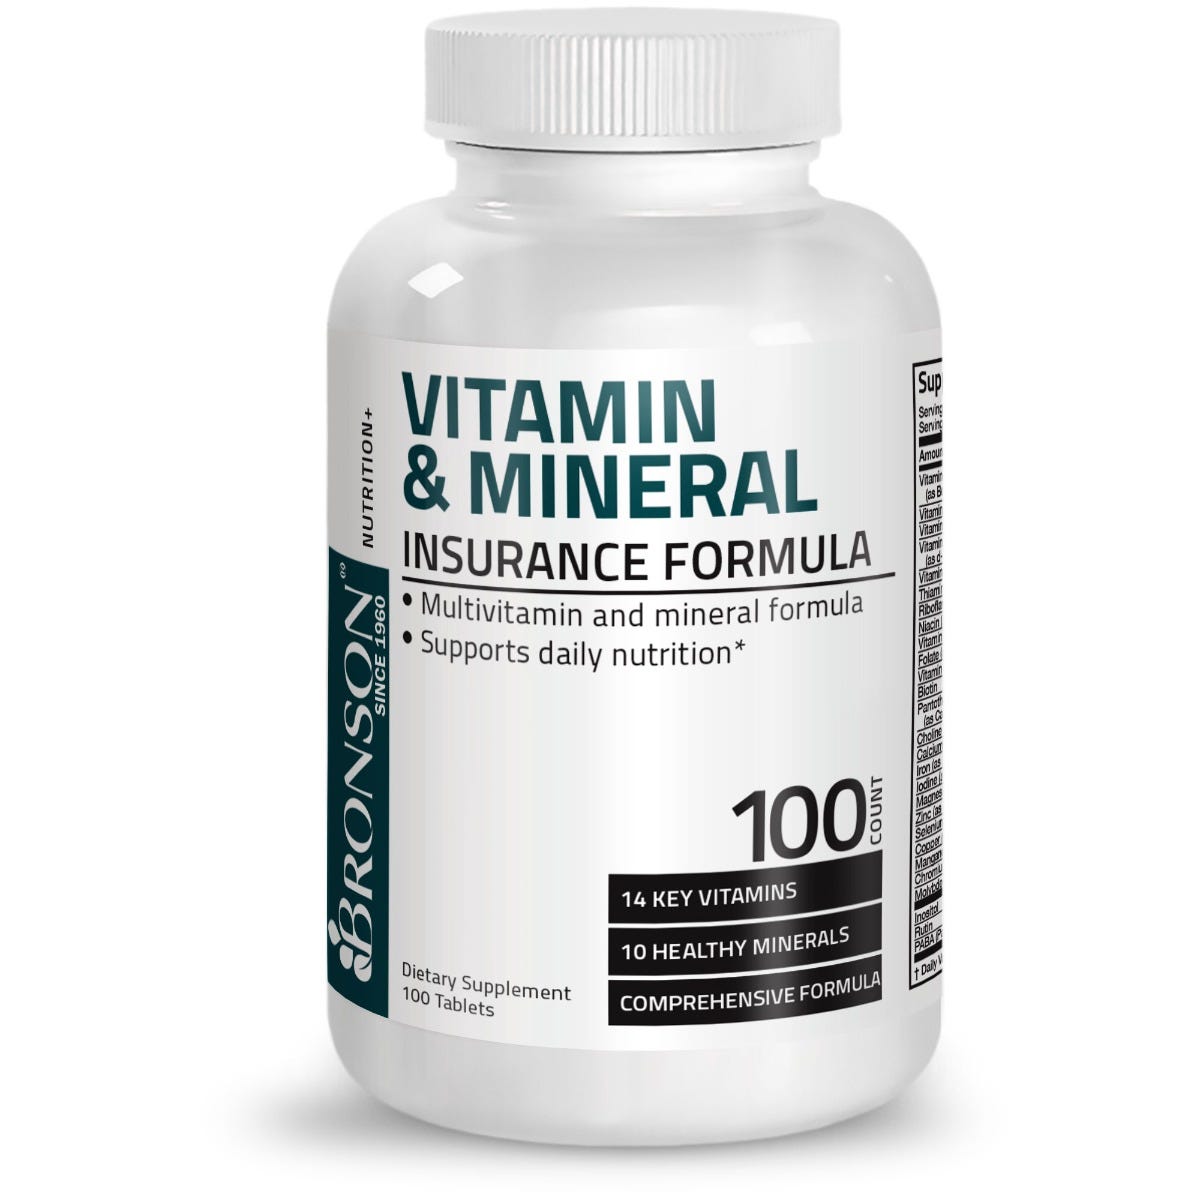 Bronson Vitamins Vitamin & Mineral Insurance Formula - 100 Tablets, Item #1A, Bottle, Front Label